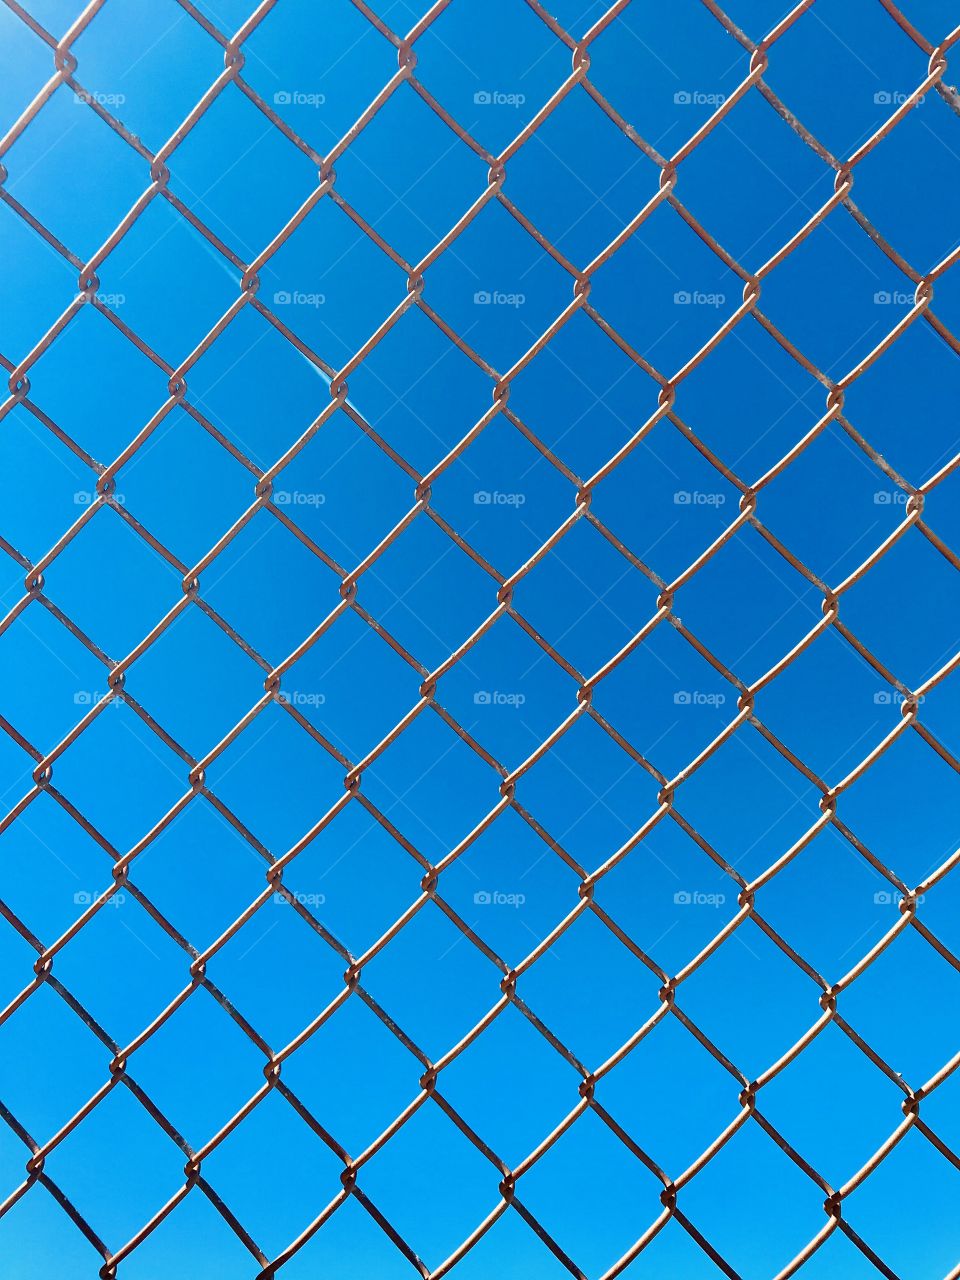 Sky blue through the fence 